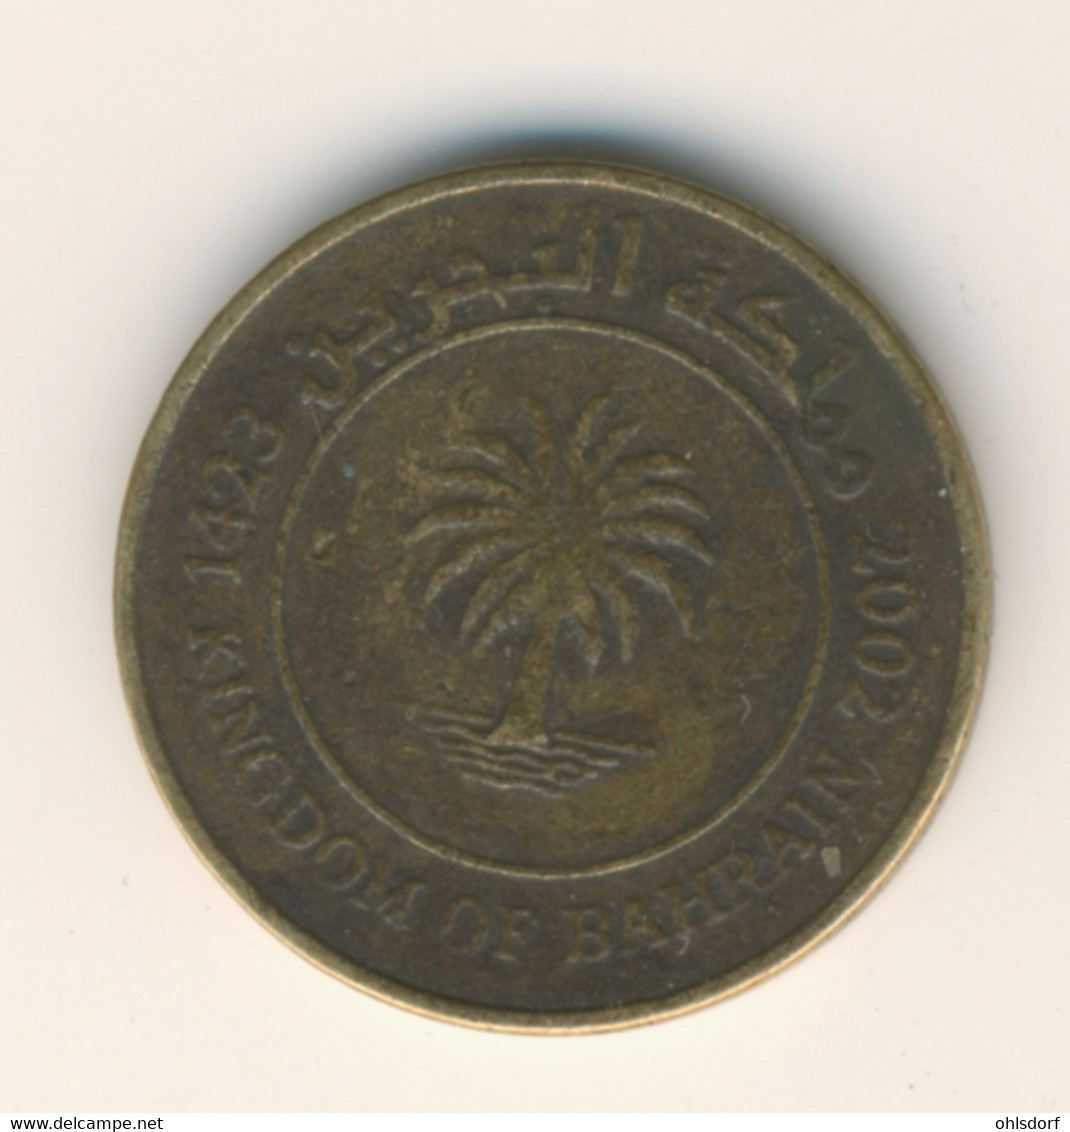 BAHRAIN 2002: 10 Fils, KM 28.1 - Bahrain